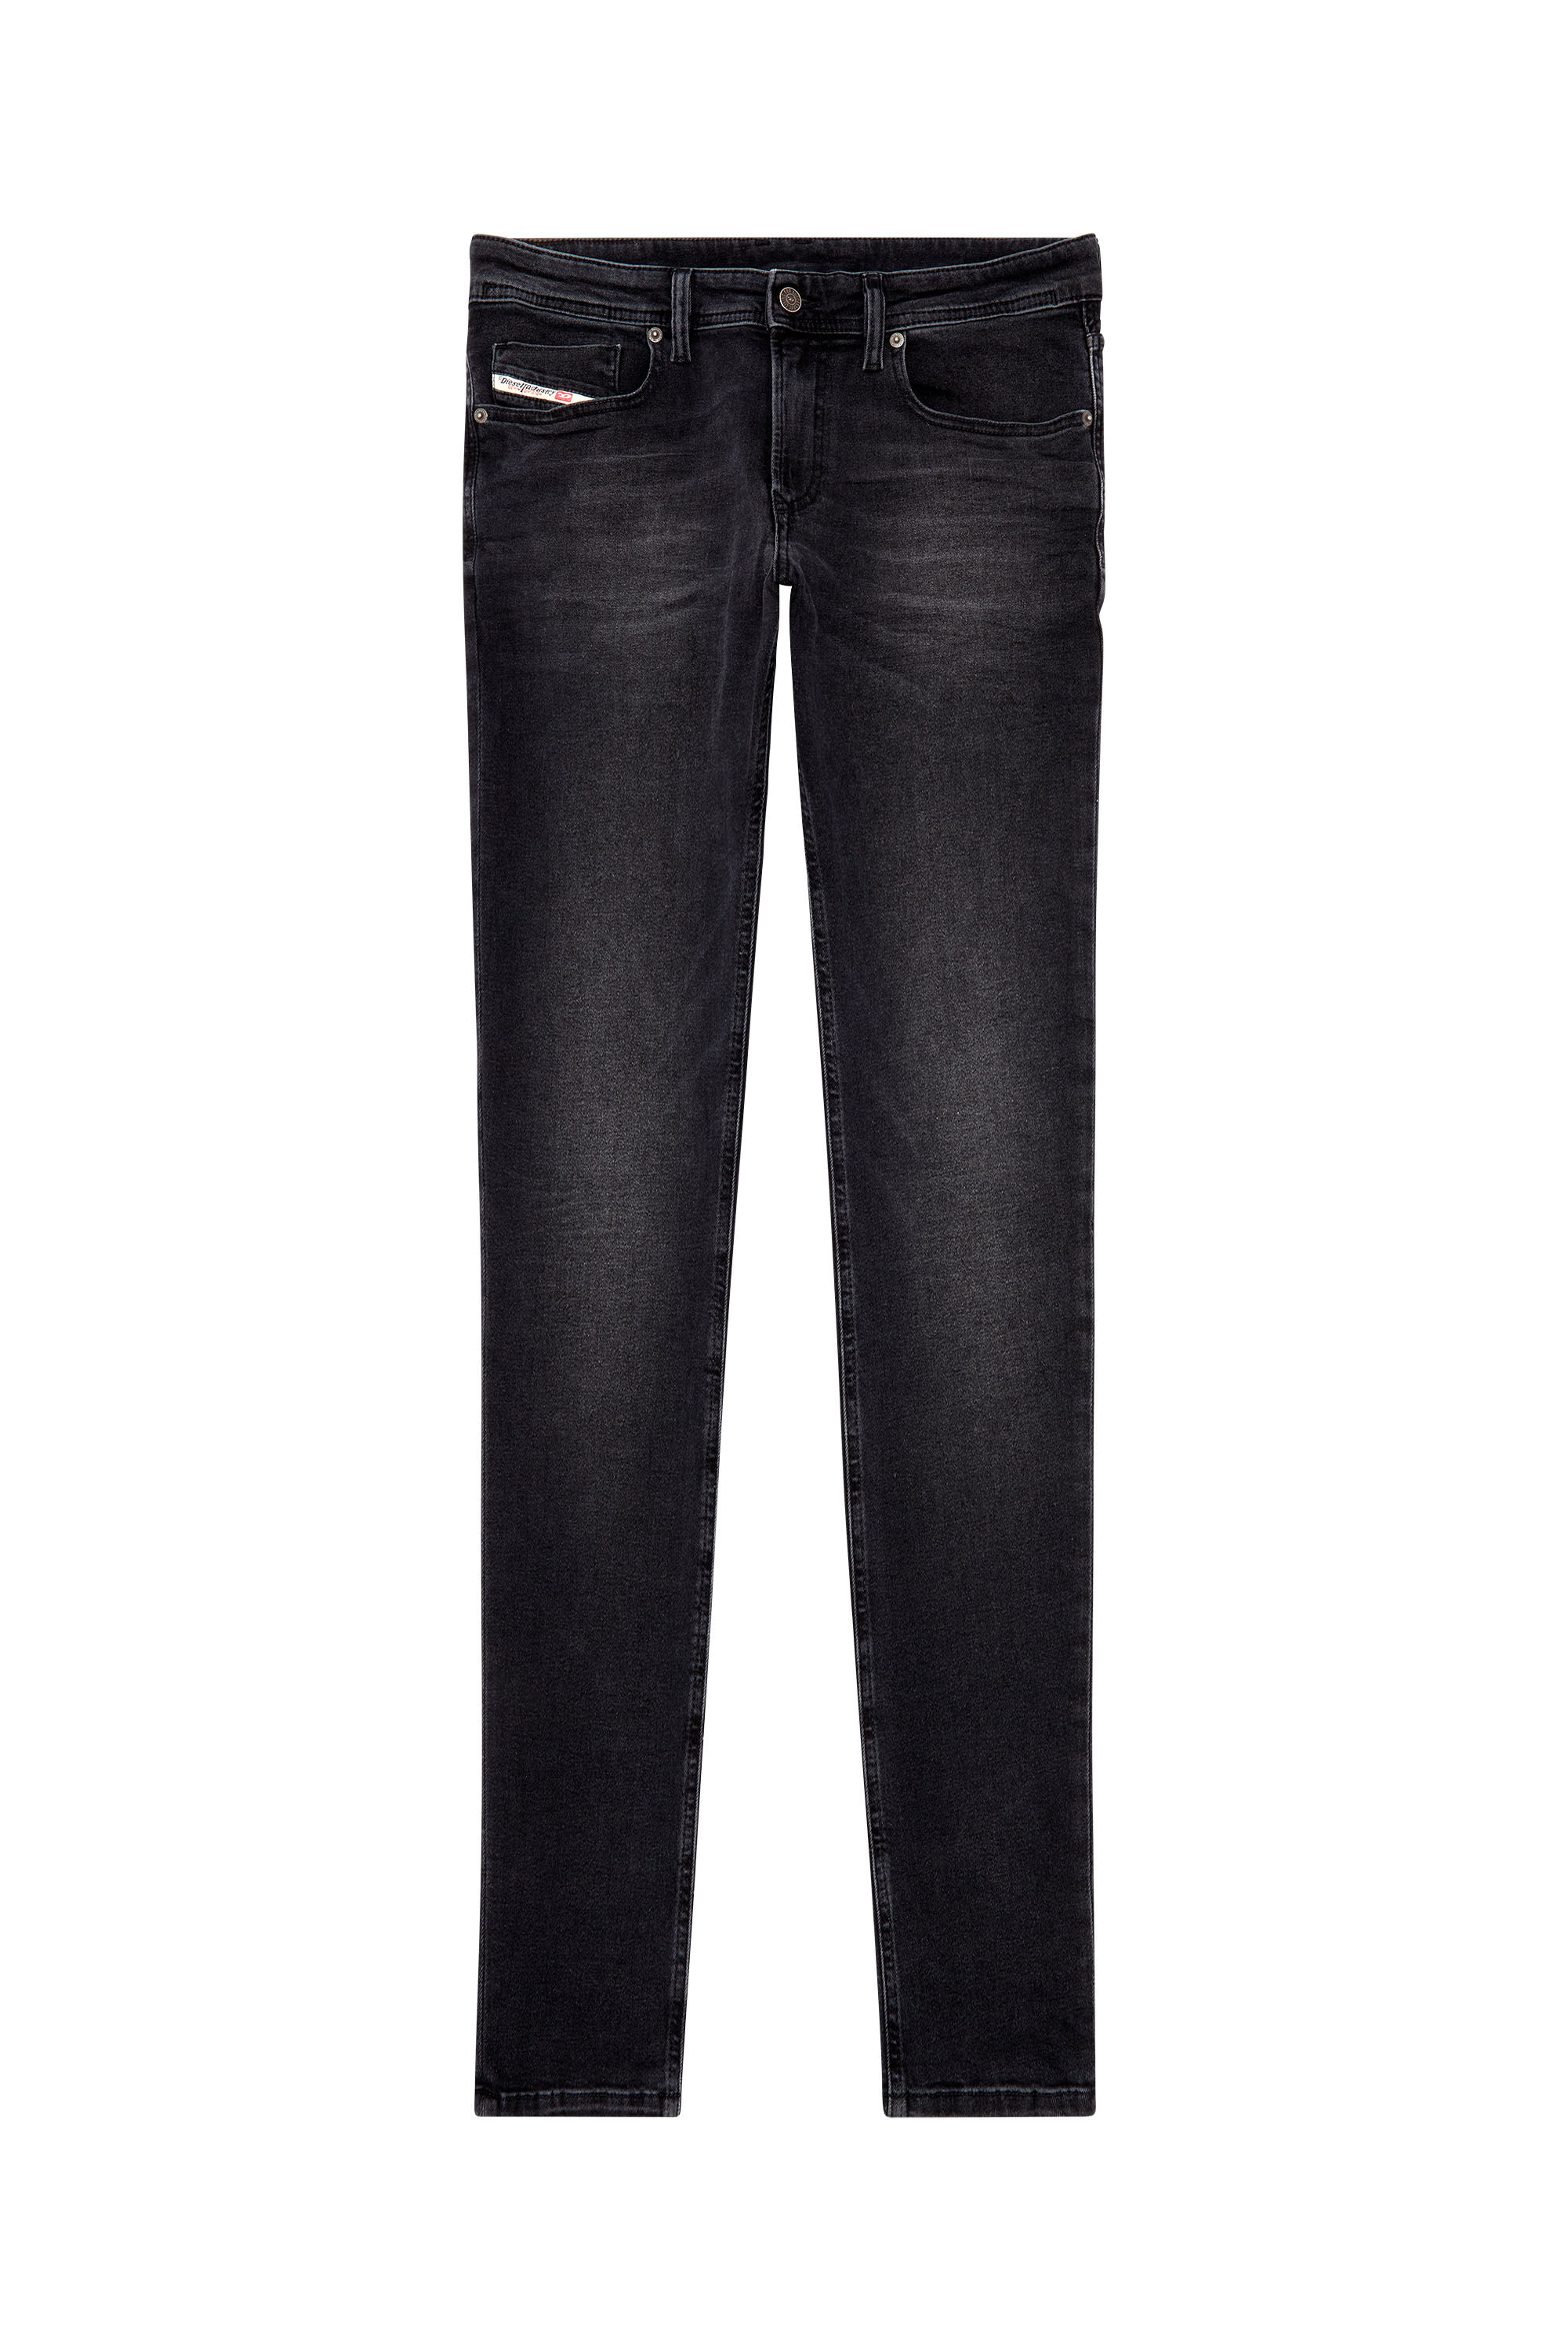 Diesel - Skinny Jeans 1979 Sleenker 0PFAS, Black/Dark grey - Image 2